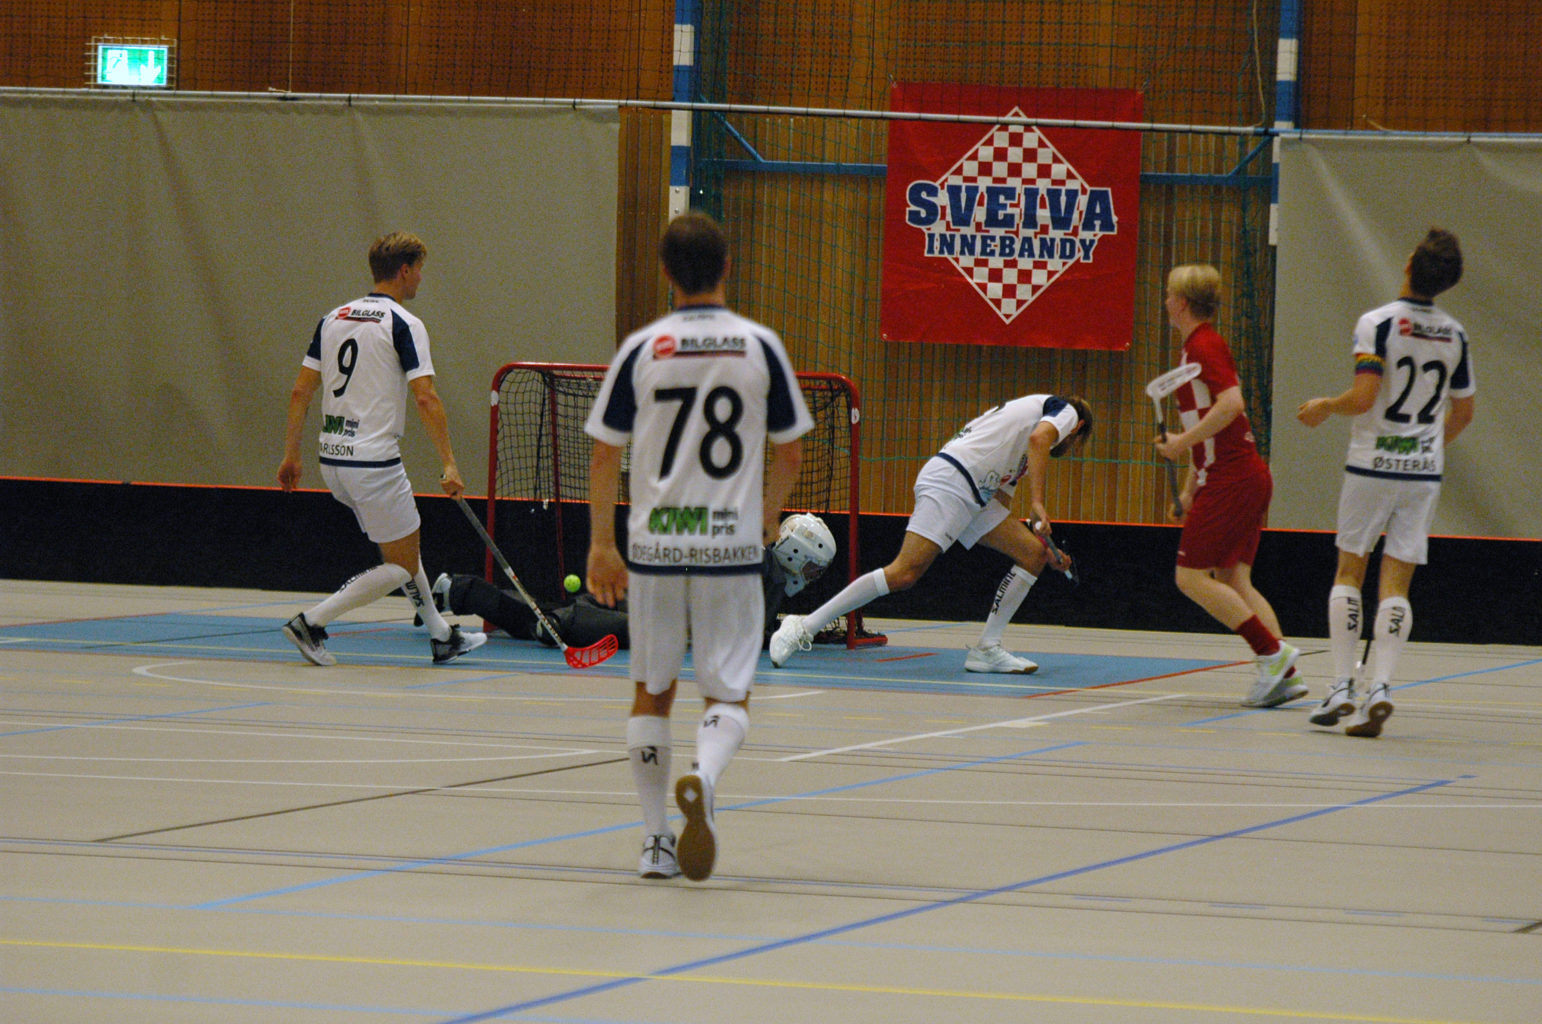 Det var feige lag i Rommenhallen da Sveiva Innebandy tok i mot Sarpsborg i den 4. serierunden.